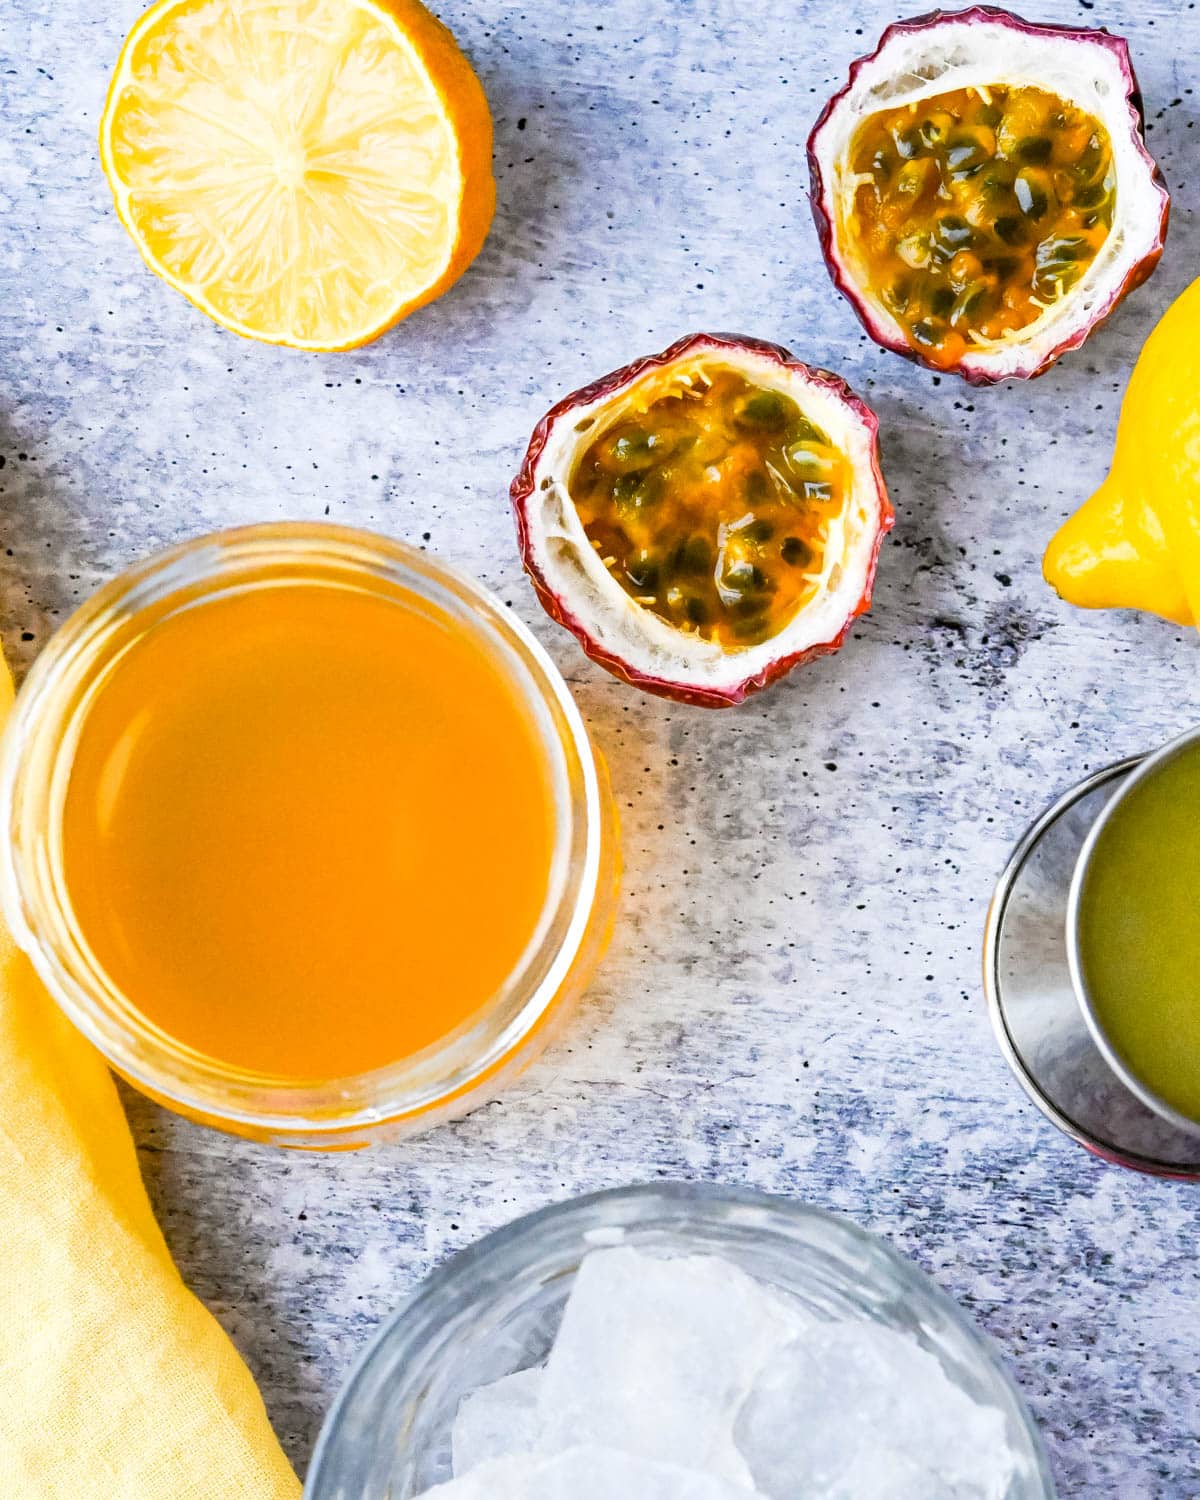 Ingredients to make passion fruit lemonade.